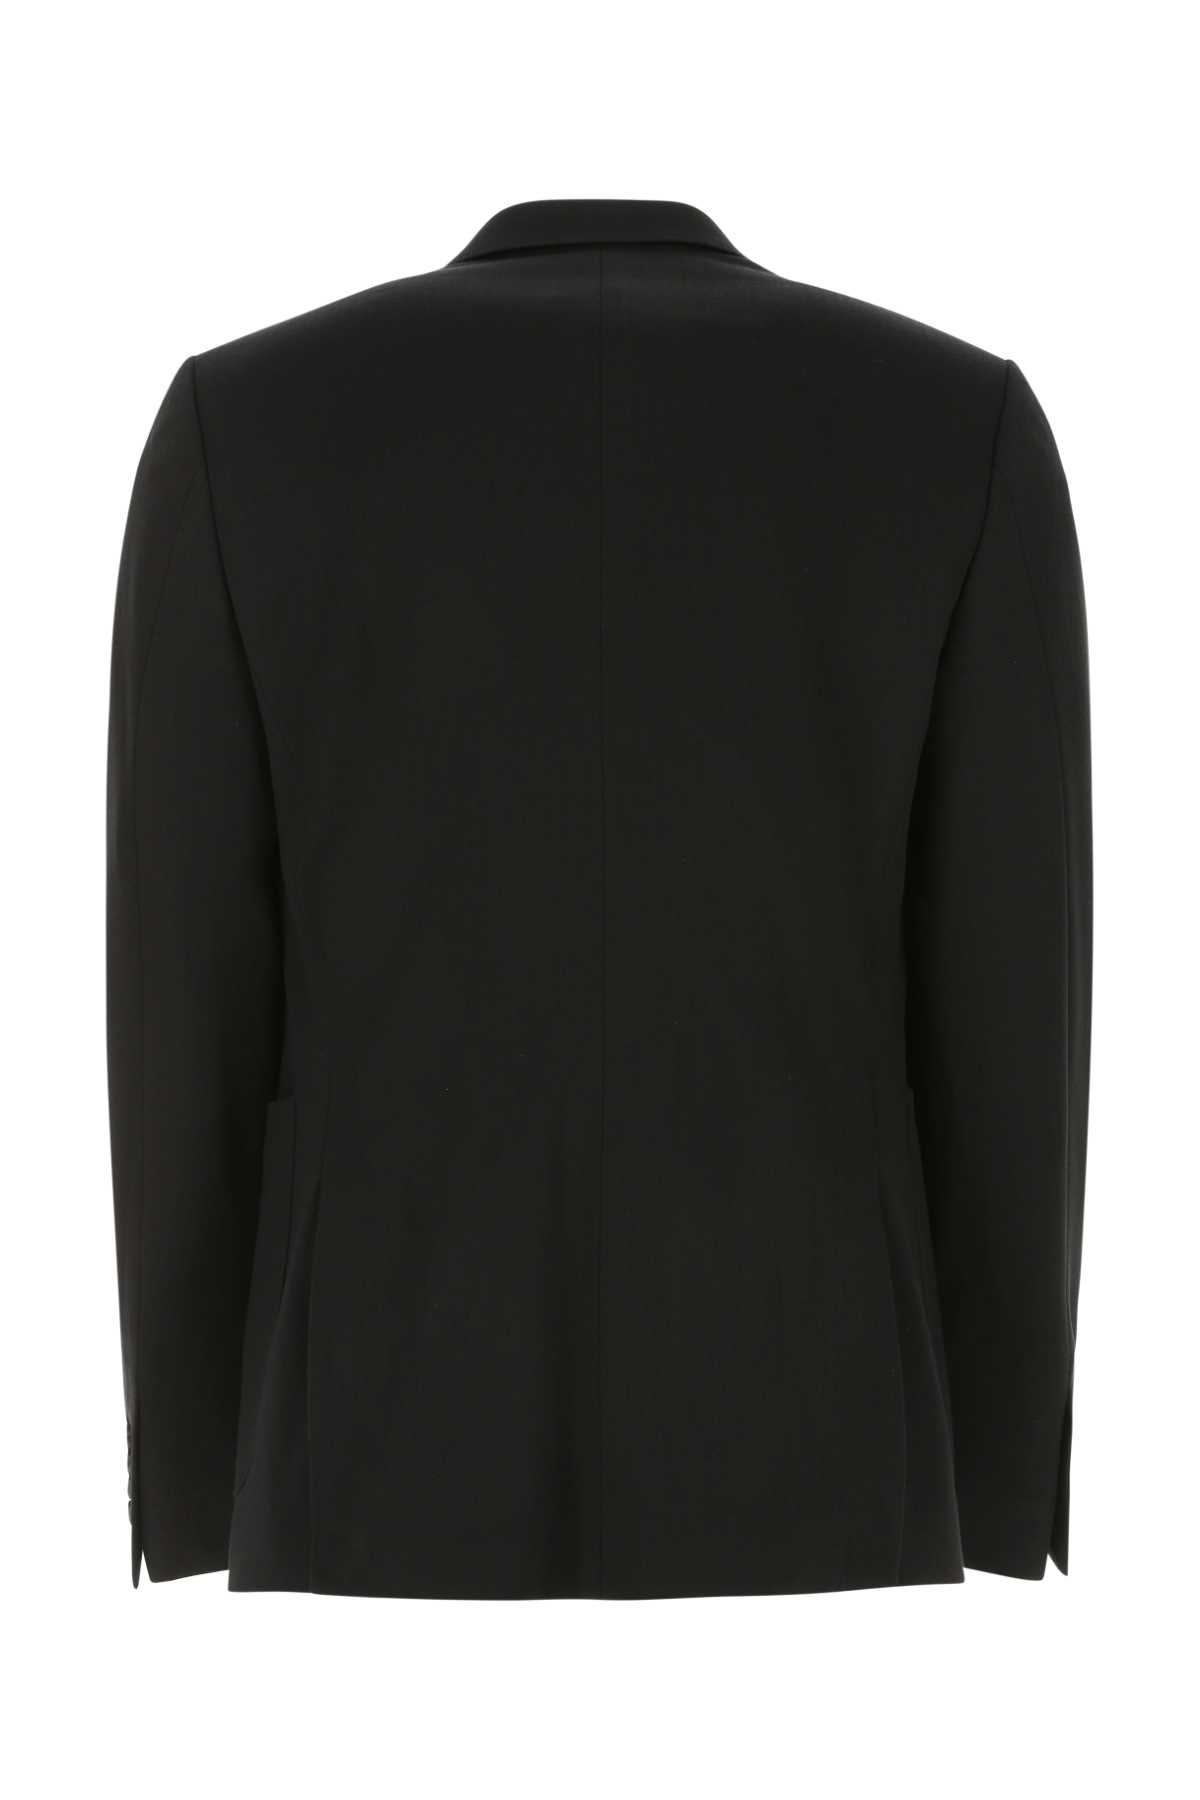 Dolce & Gabbana Black Stretch Viscose Blend Blazer In S9000